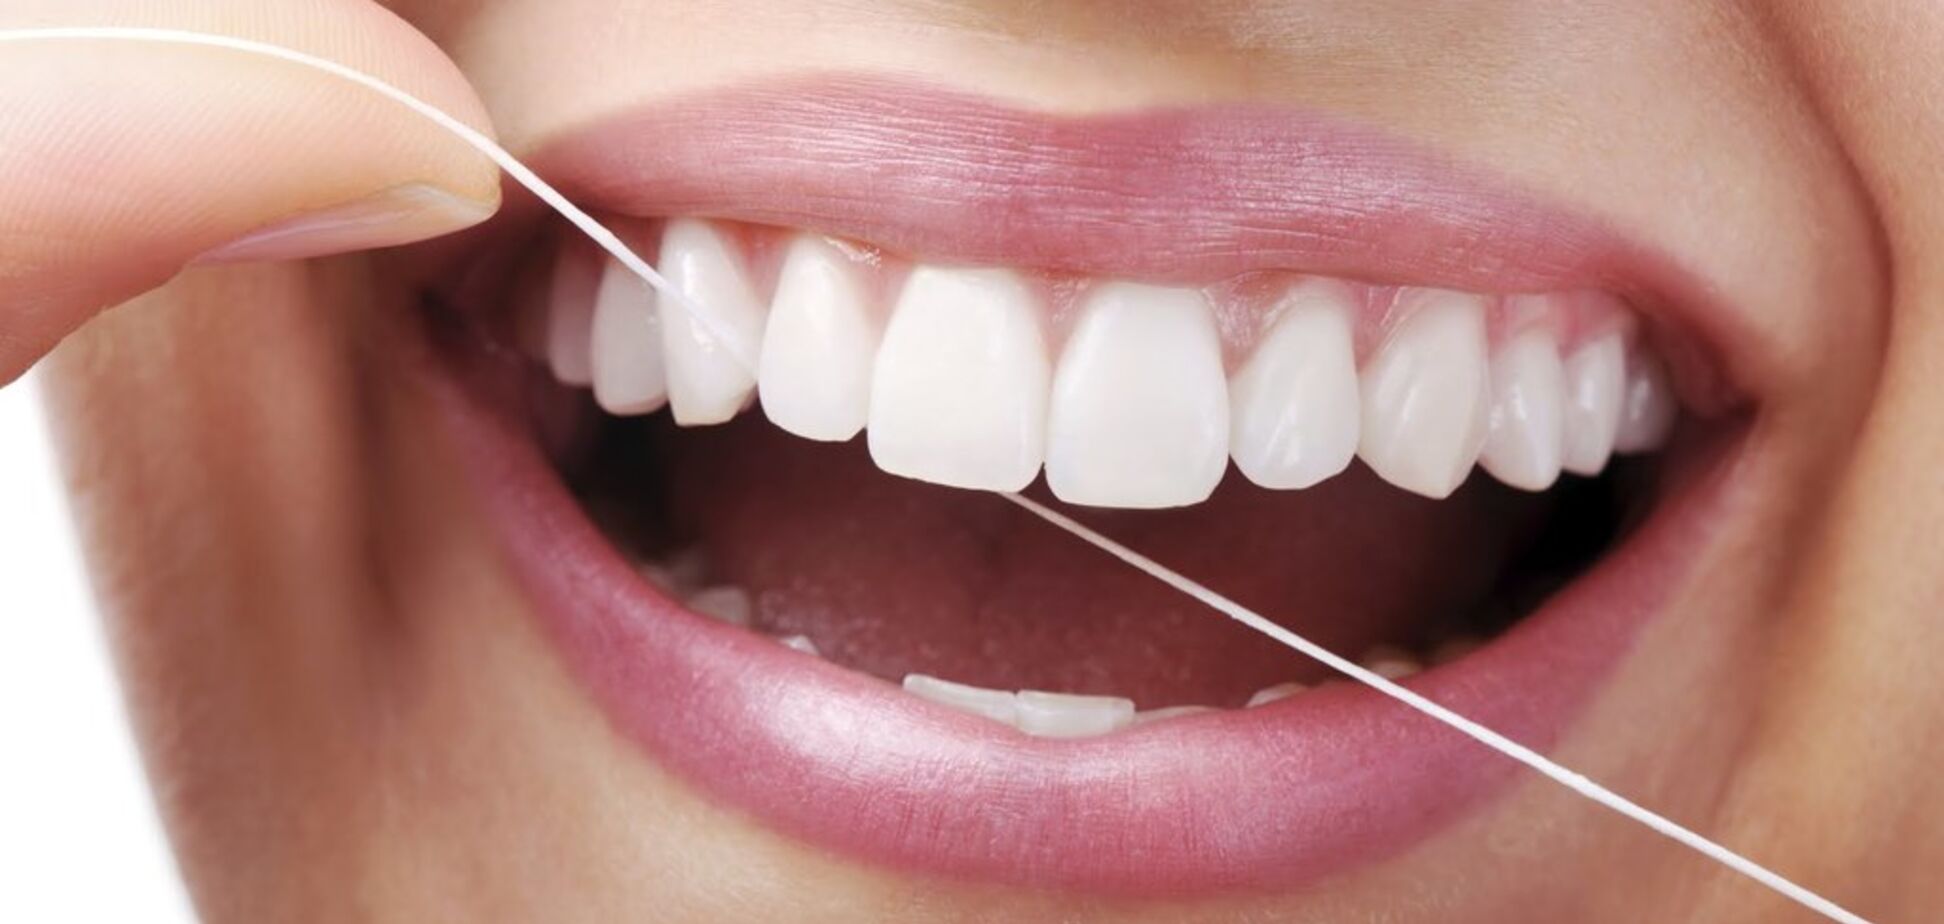  Может вызвать рак: выяснилась опасность ухода за зубами